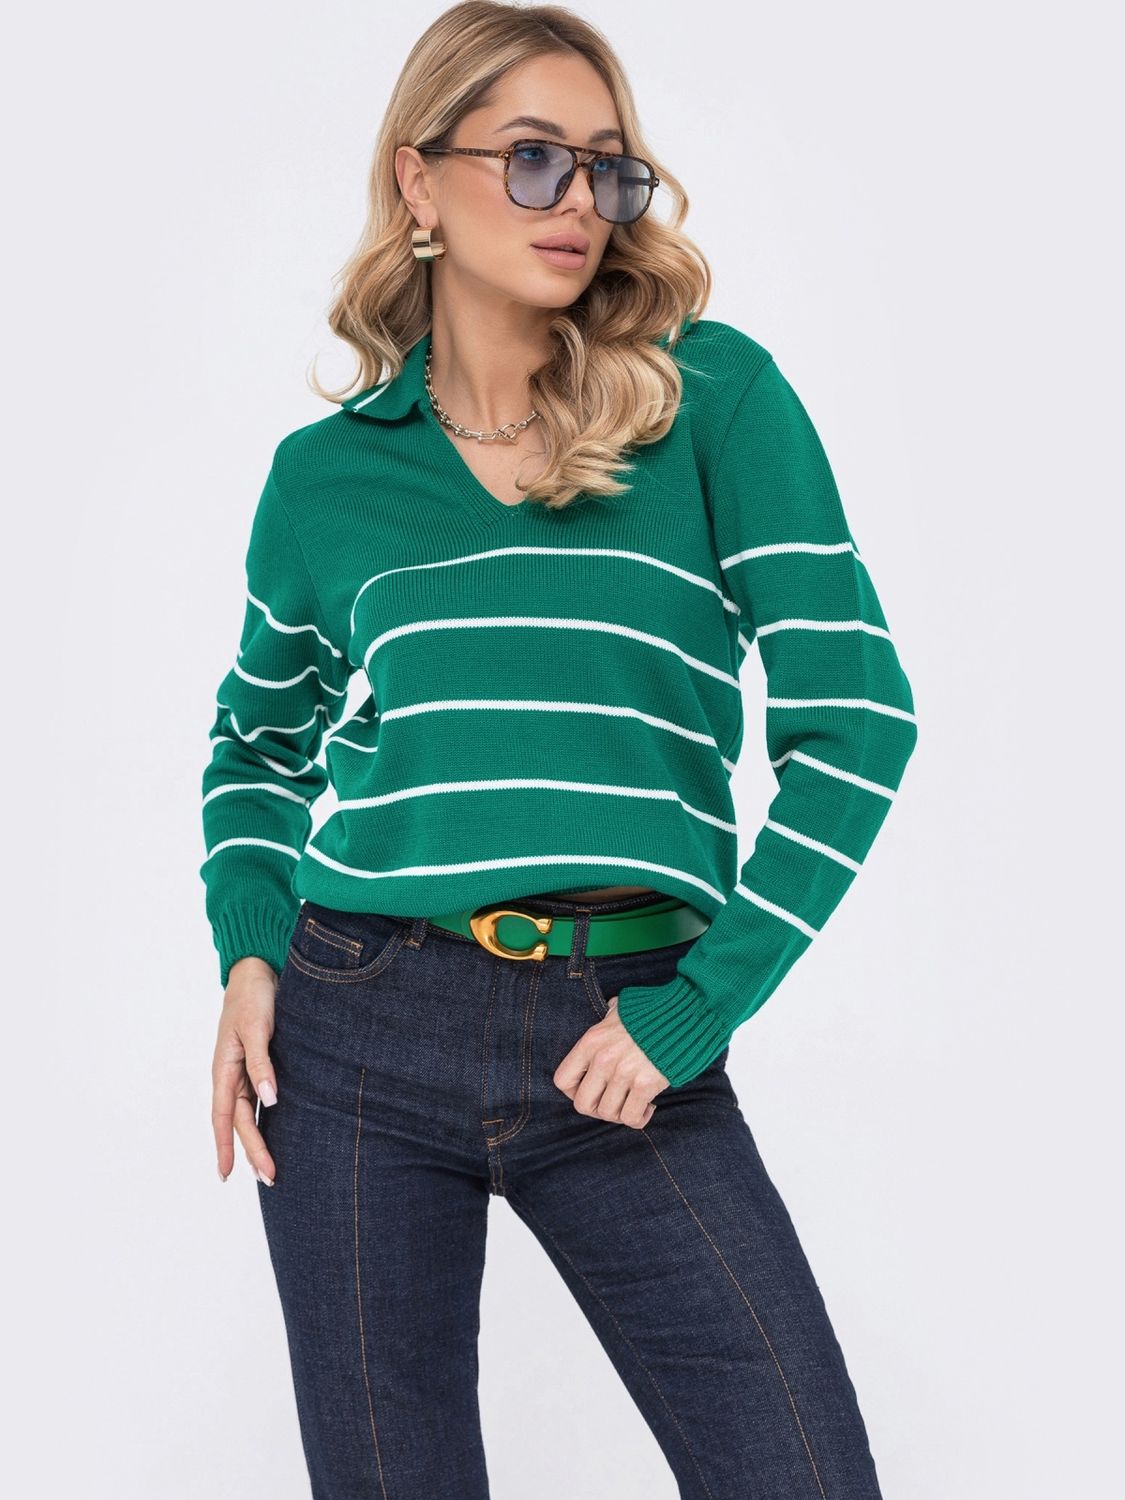 Женский вязаный пуловер зеленого цвета - фото